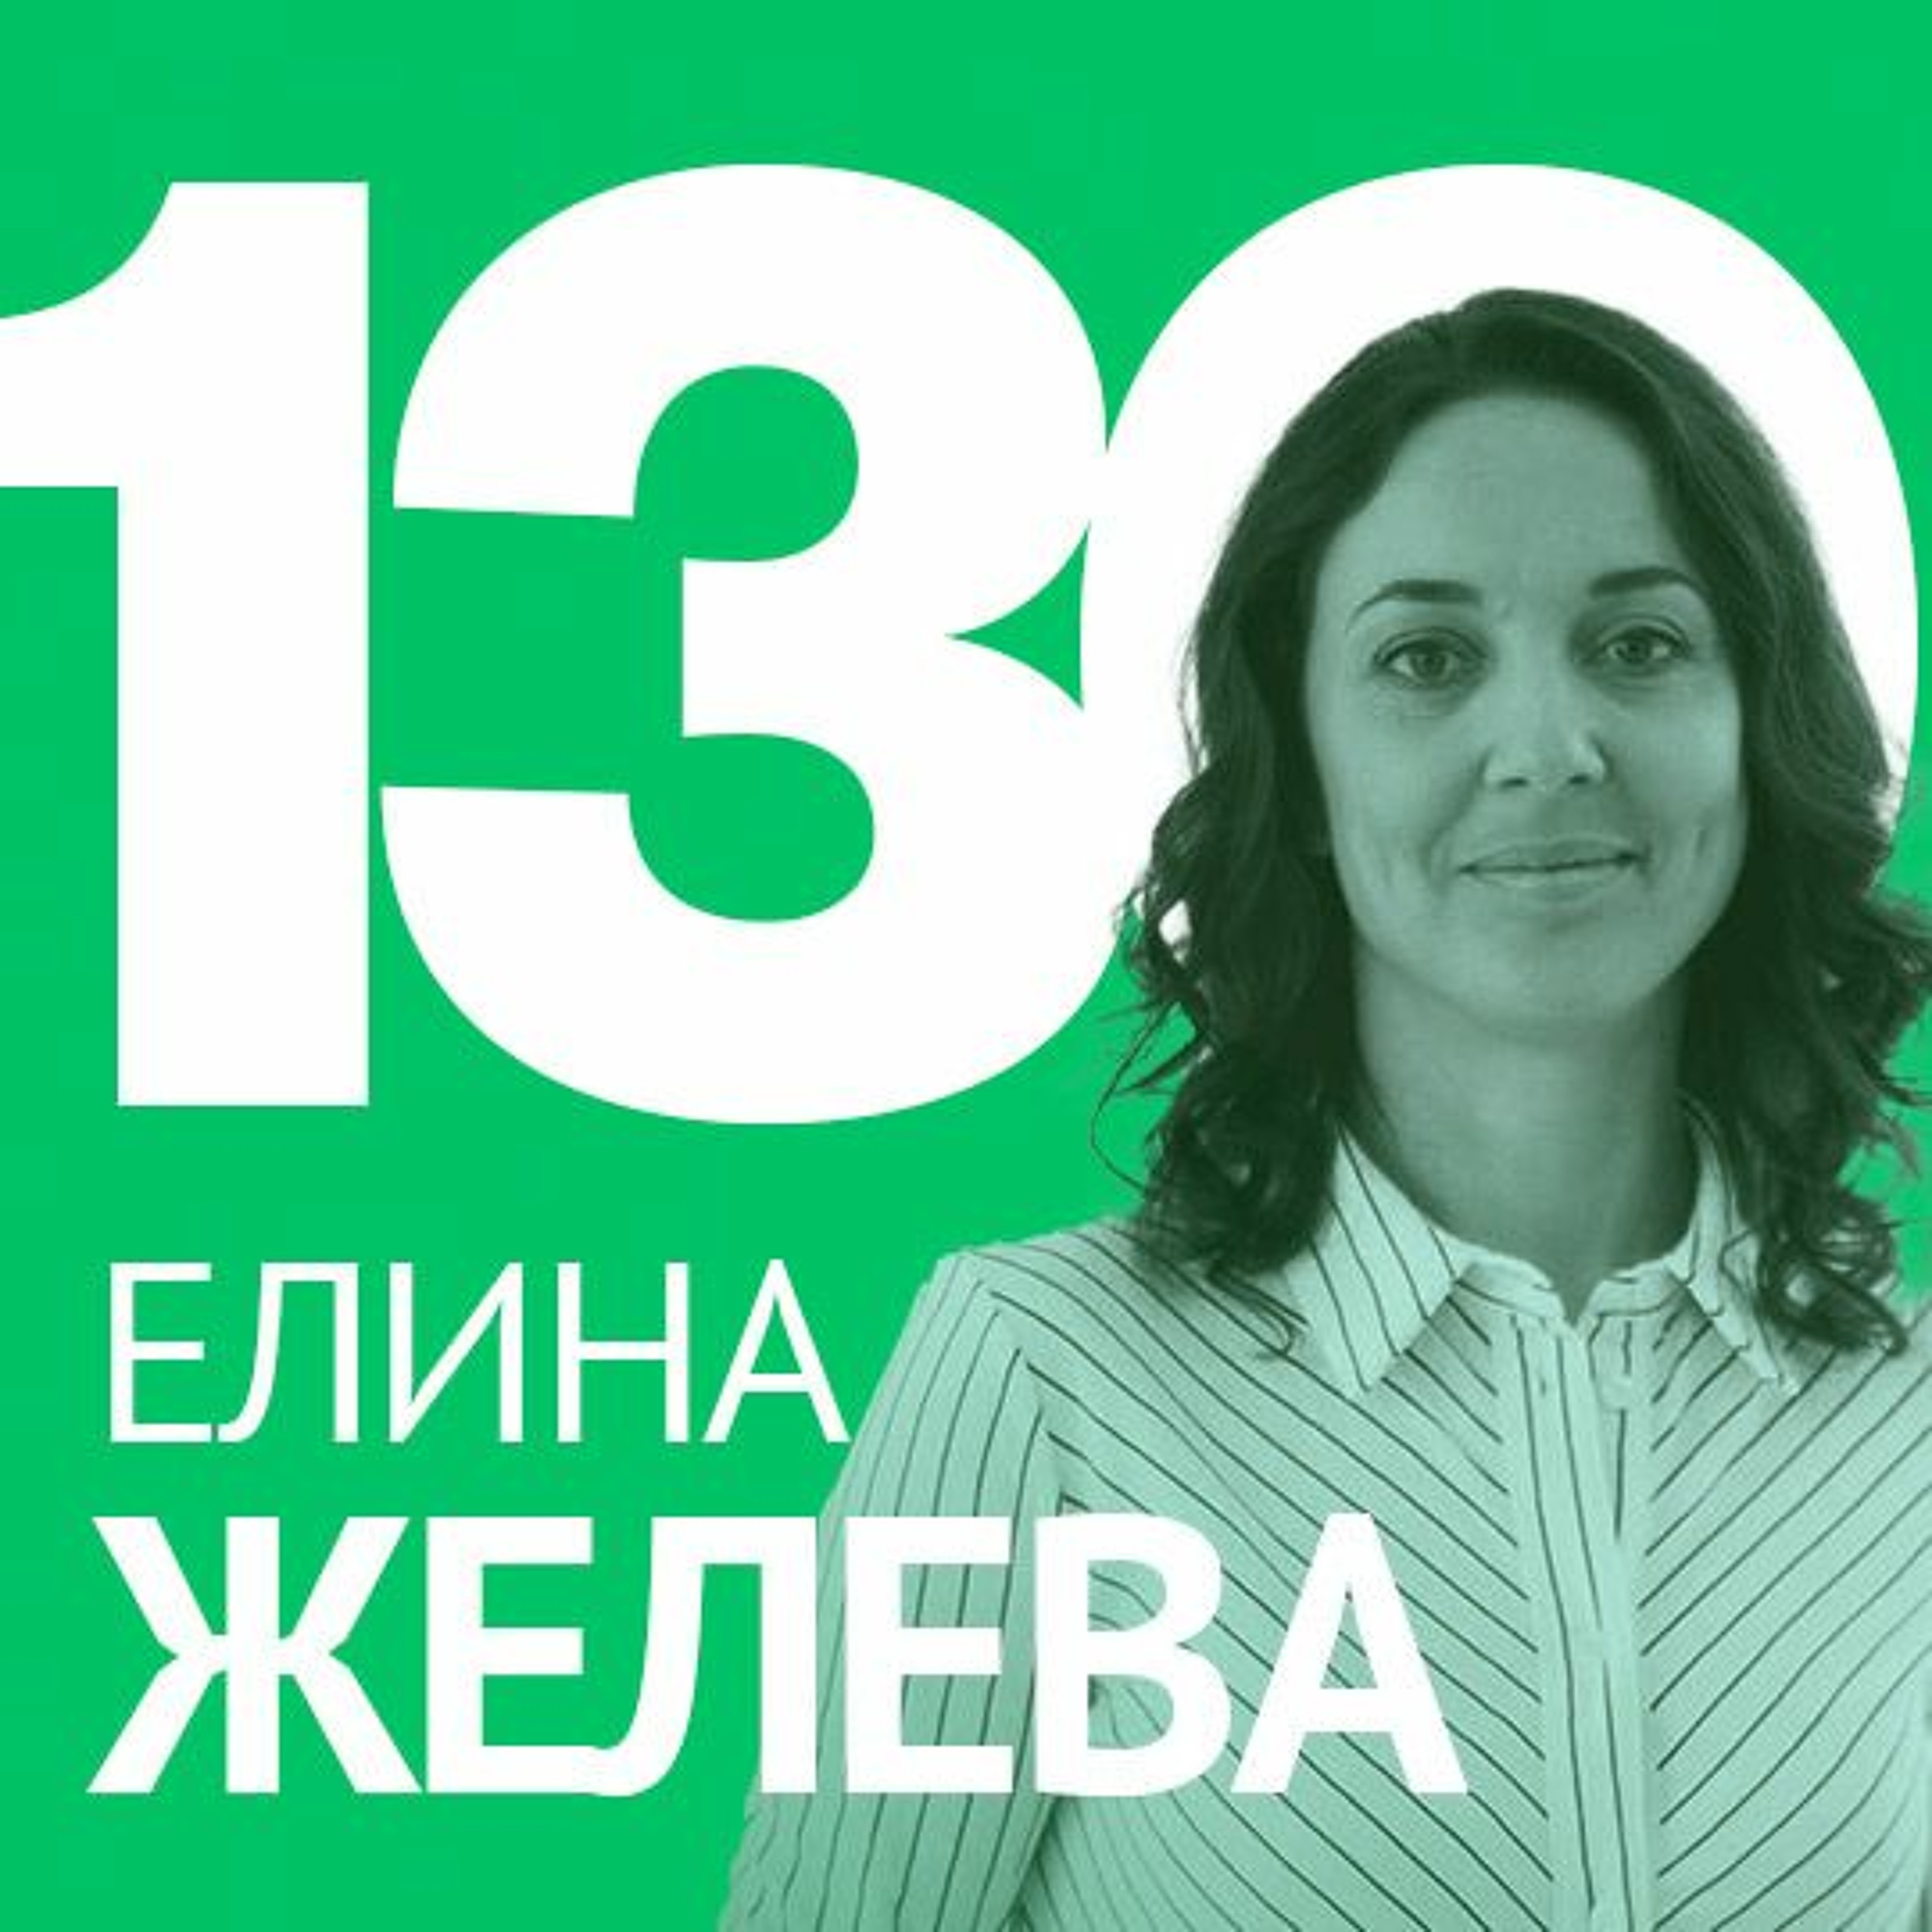 130/ Елина Желева от Launchlabs – Дизайн мислене и бизнес редизайн?